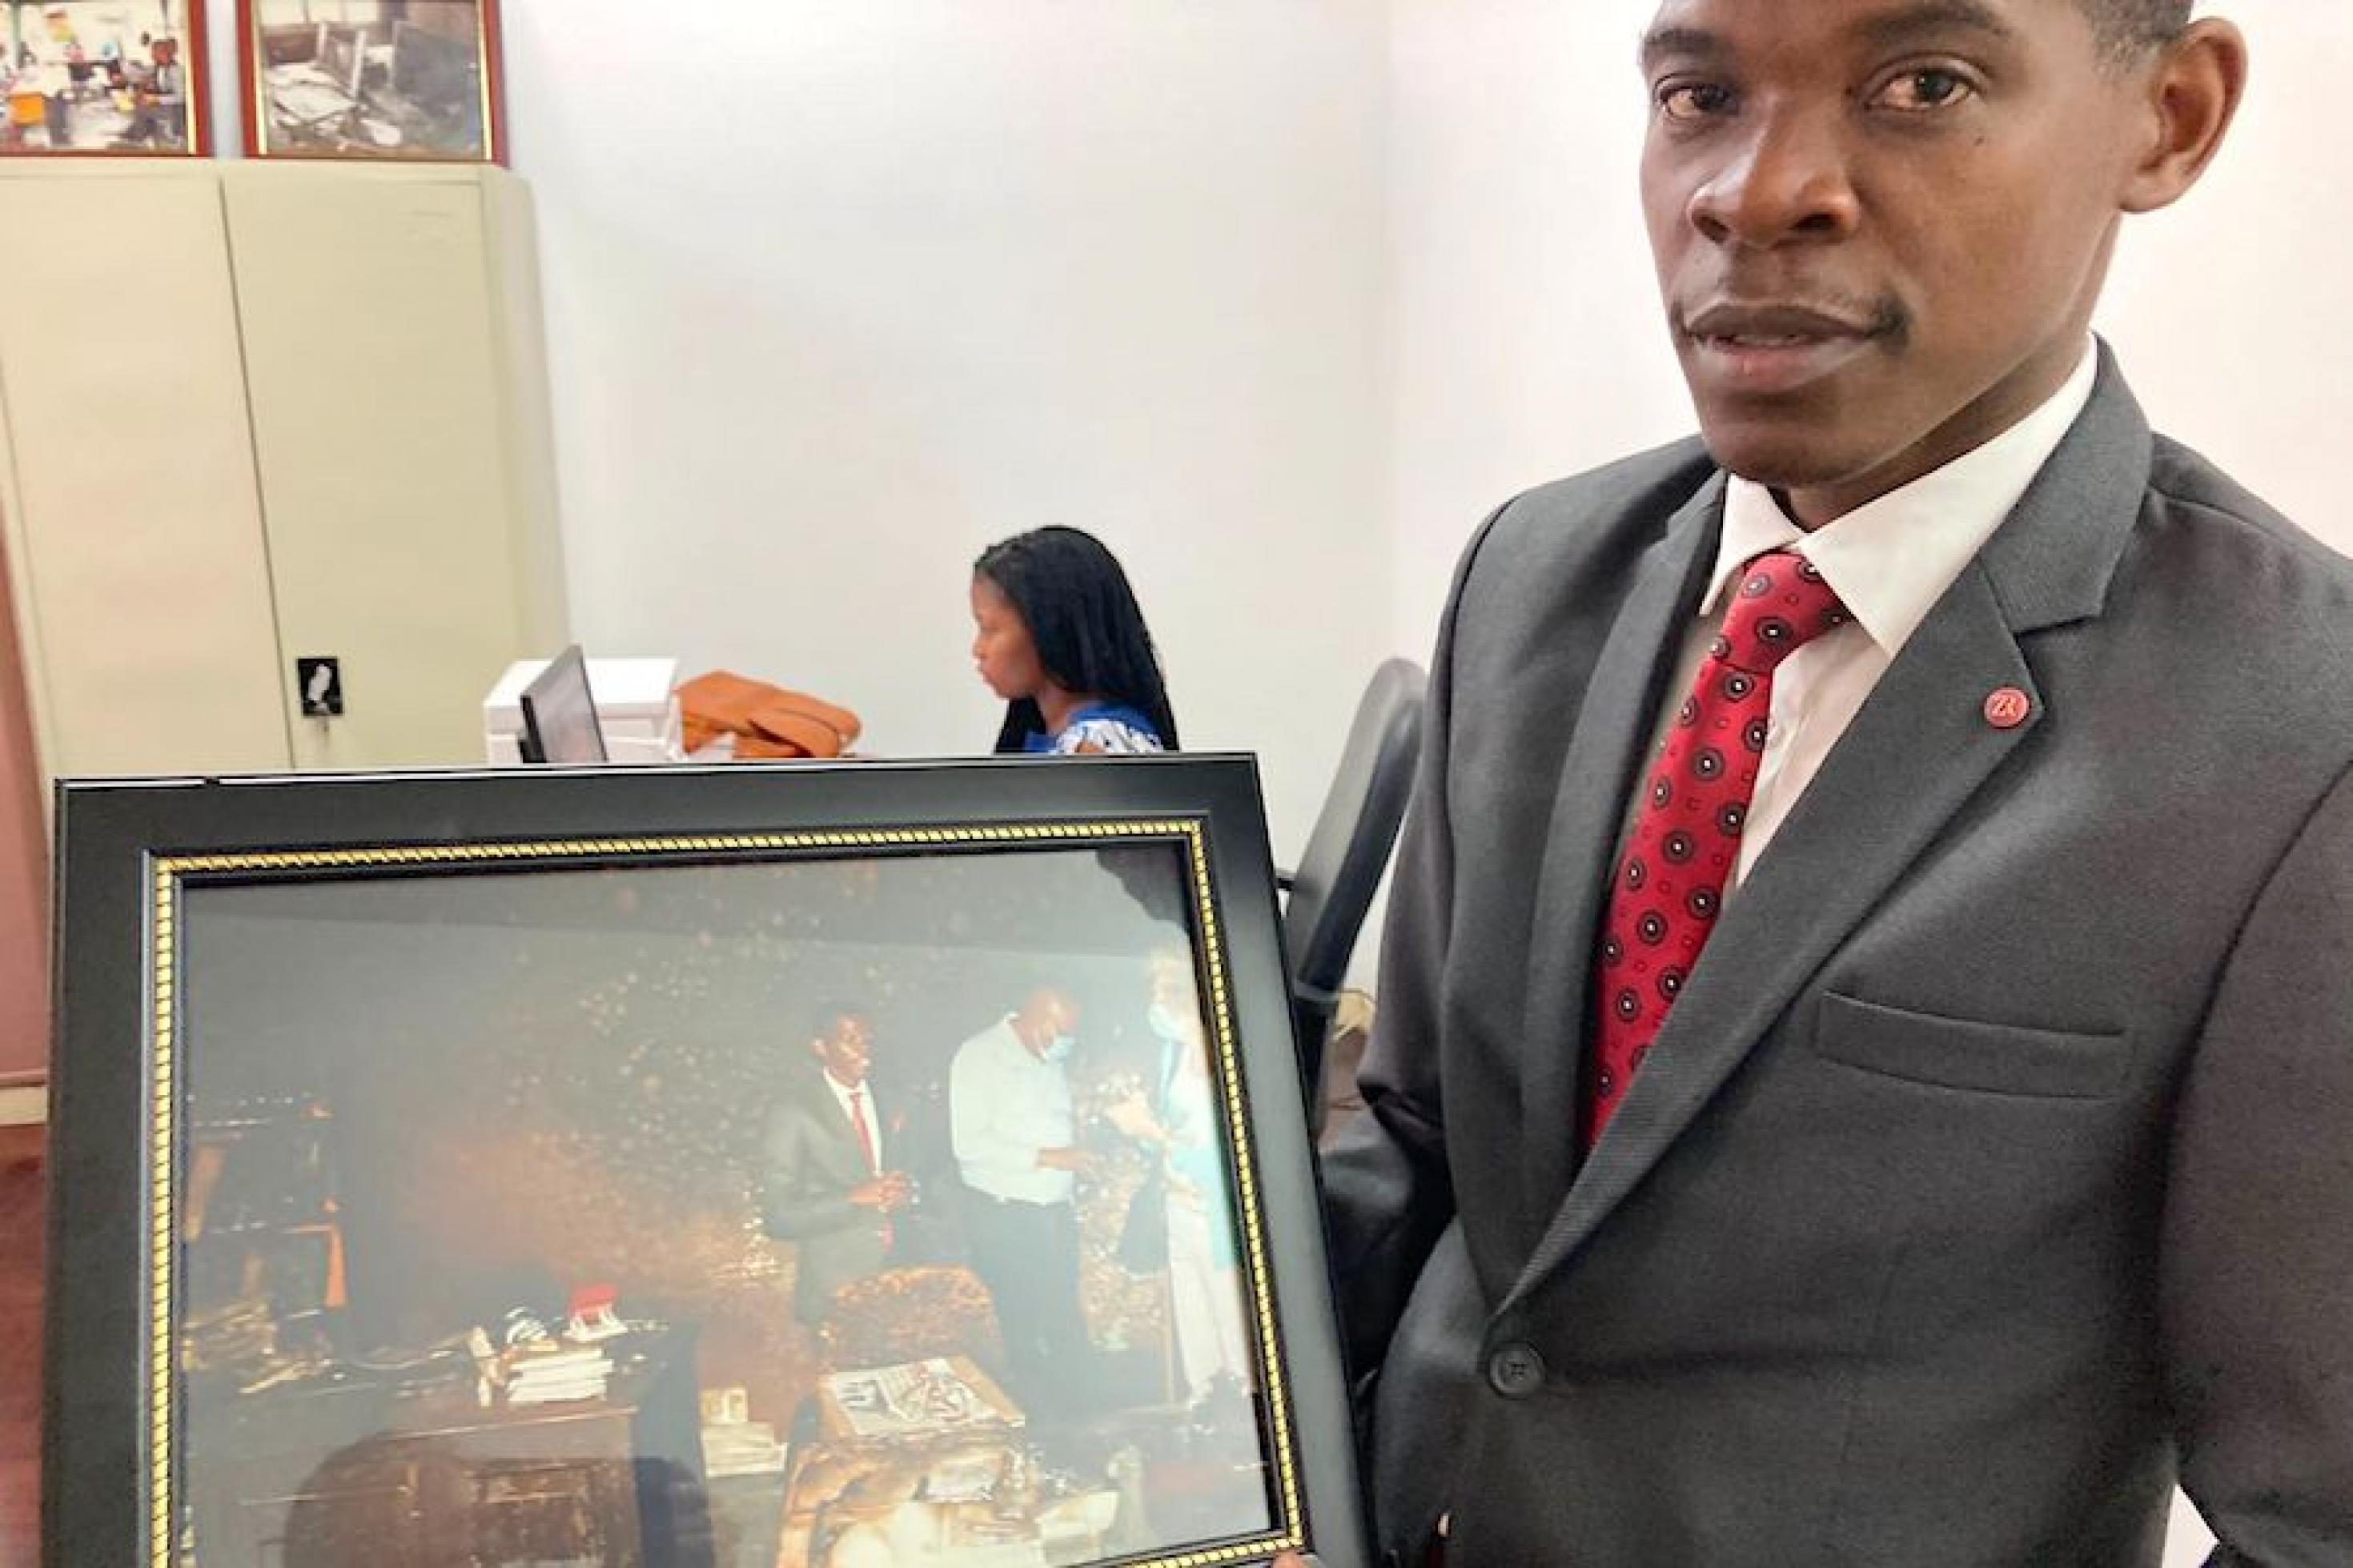 Matias Guente, Chefredakteur der regierungskritischen Zeitung „Canal de Moçambique“, zeigt ein Foto von 2021, auf dem zu sehen ist, wie ihm der International Press Freedom Award verliehen wird.